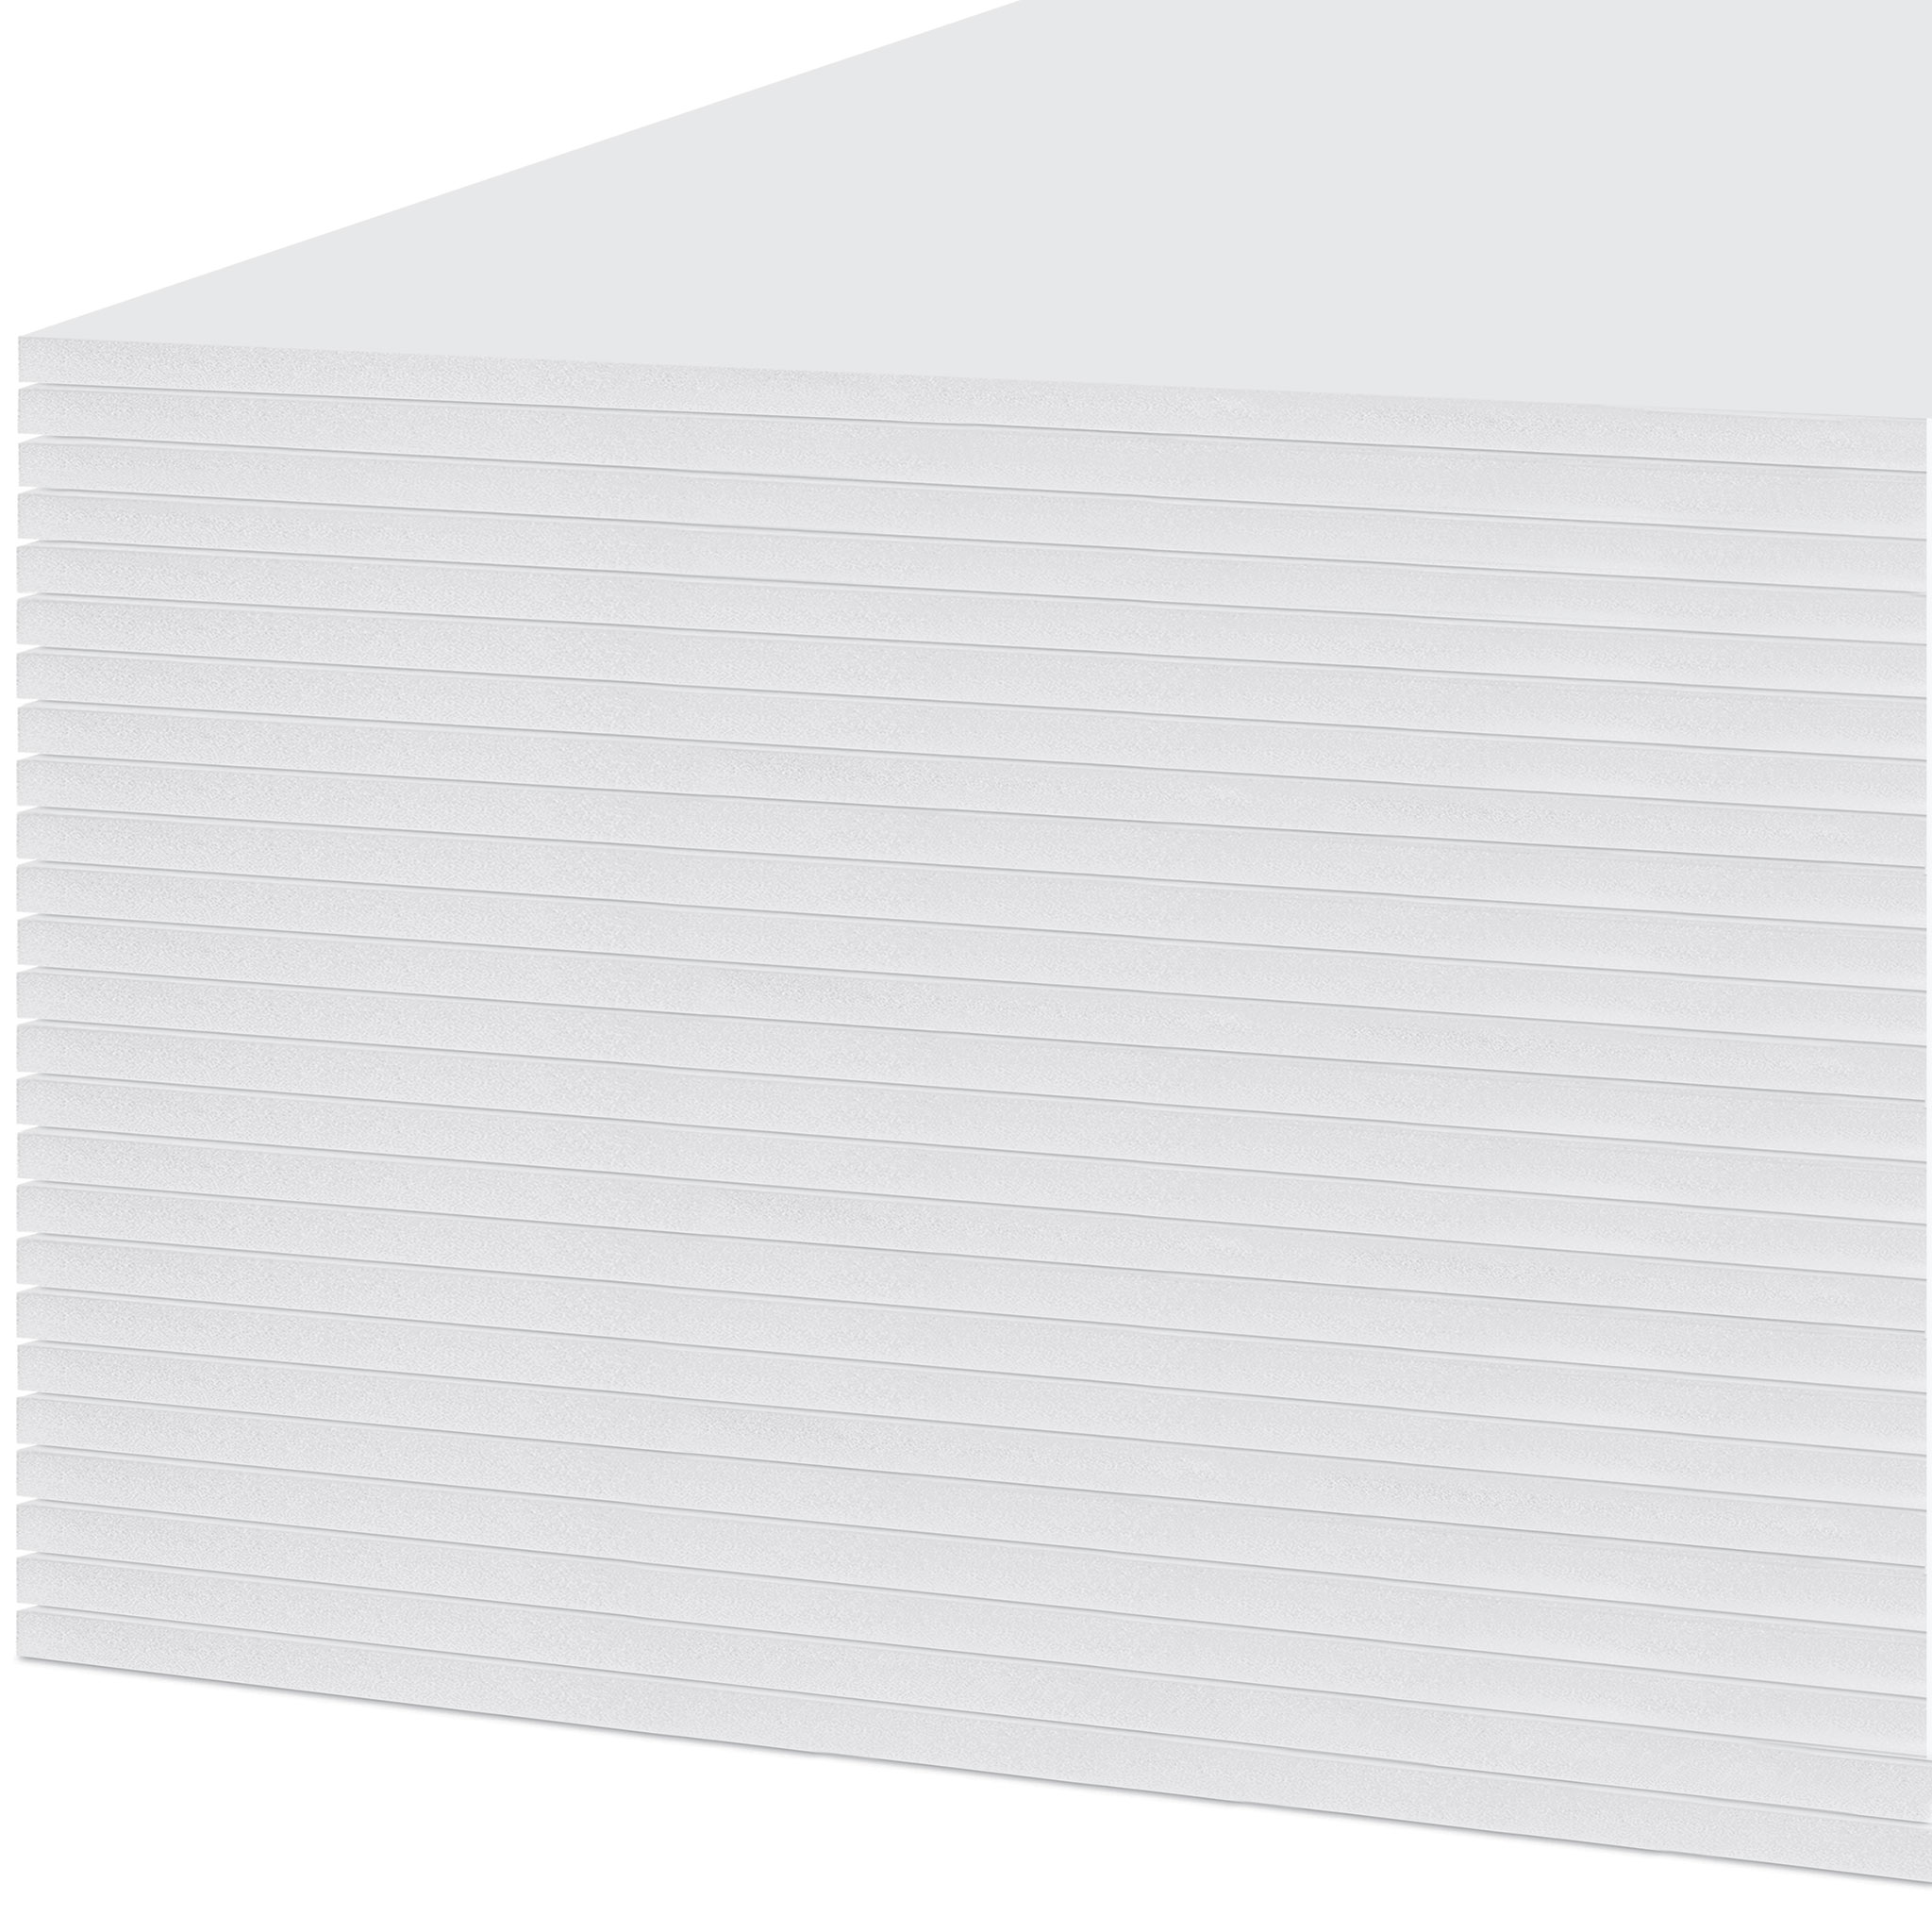 48 x 96 x 1/2 inch White Foam Board 12 pack